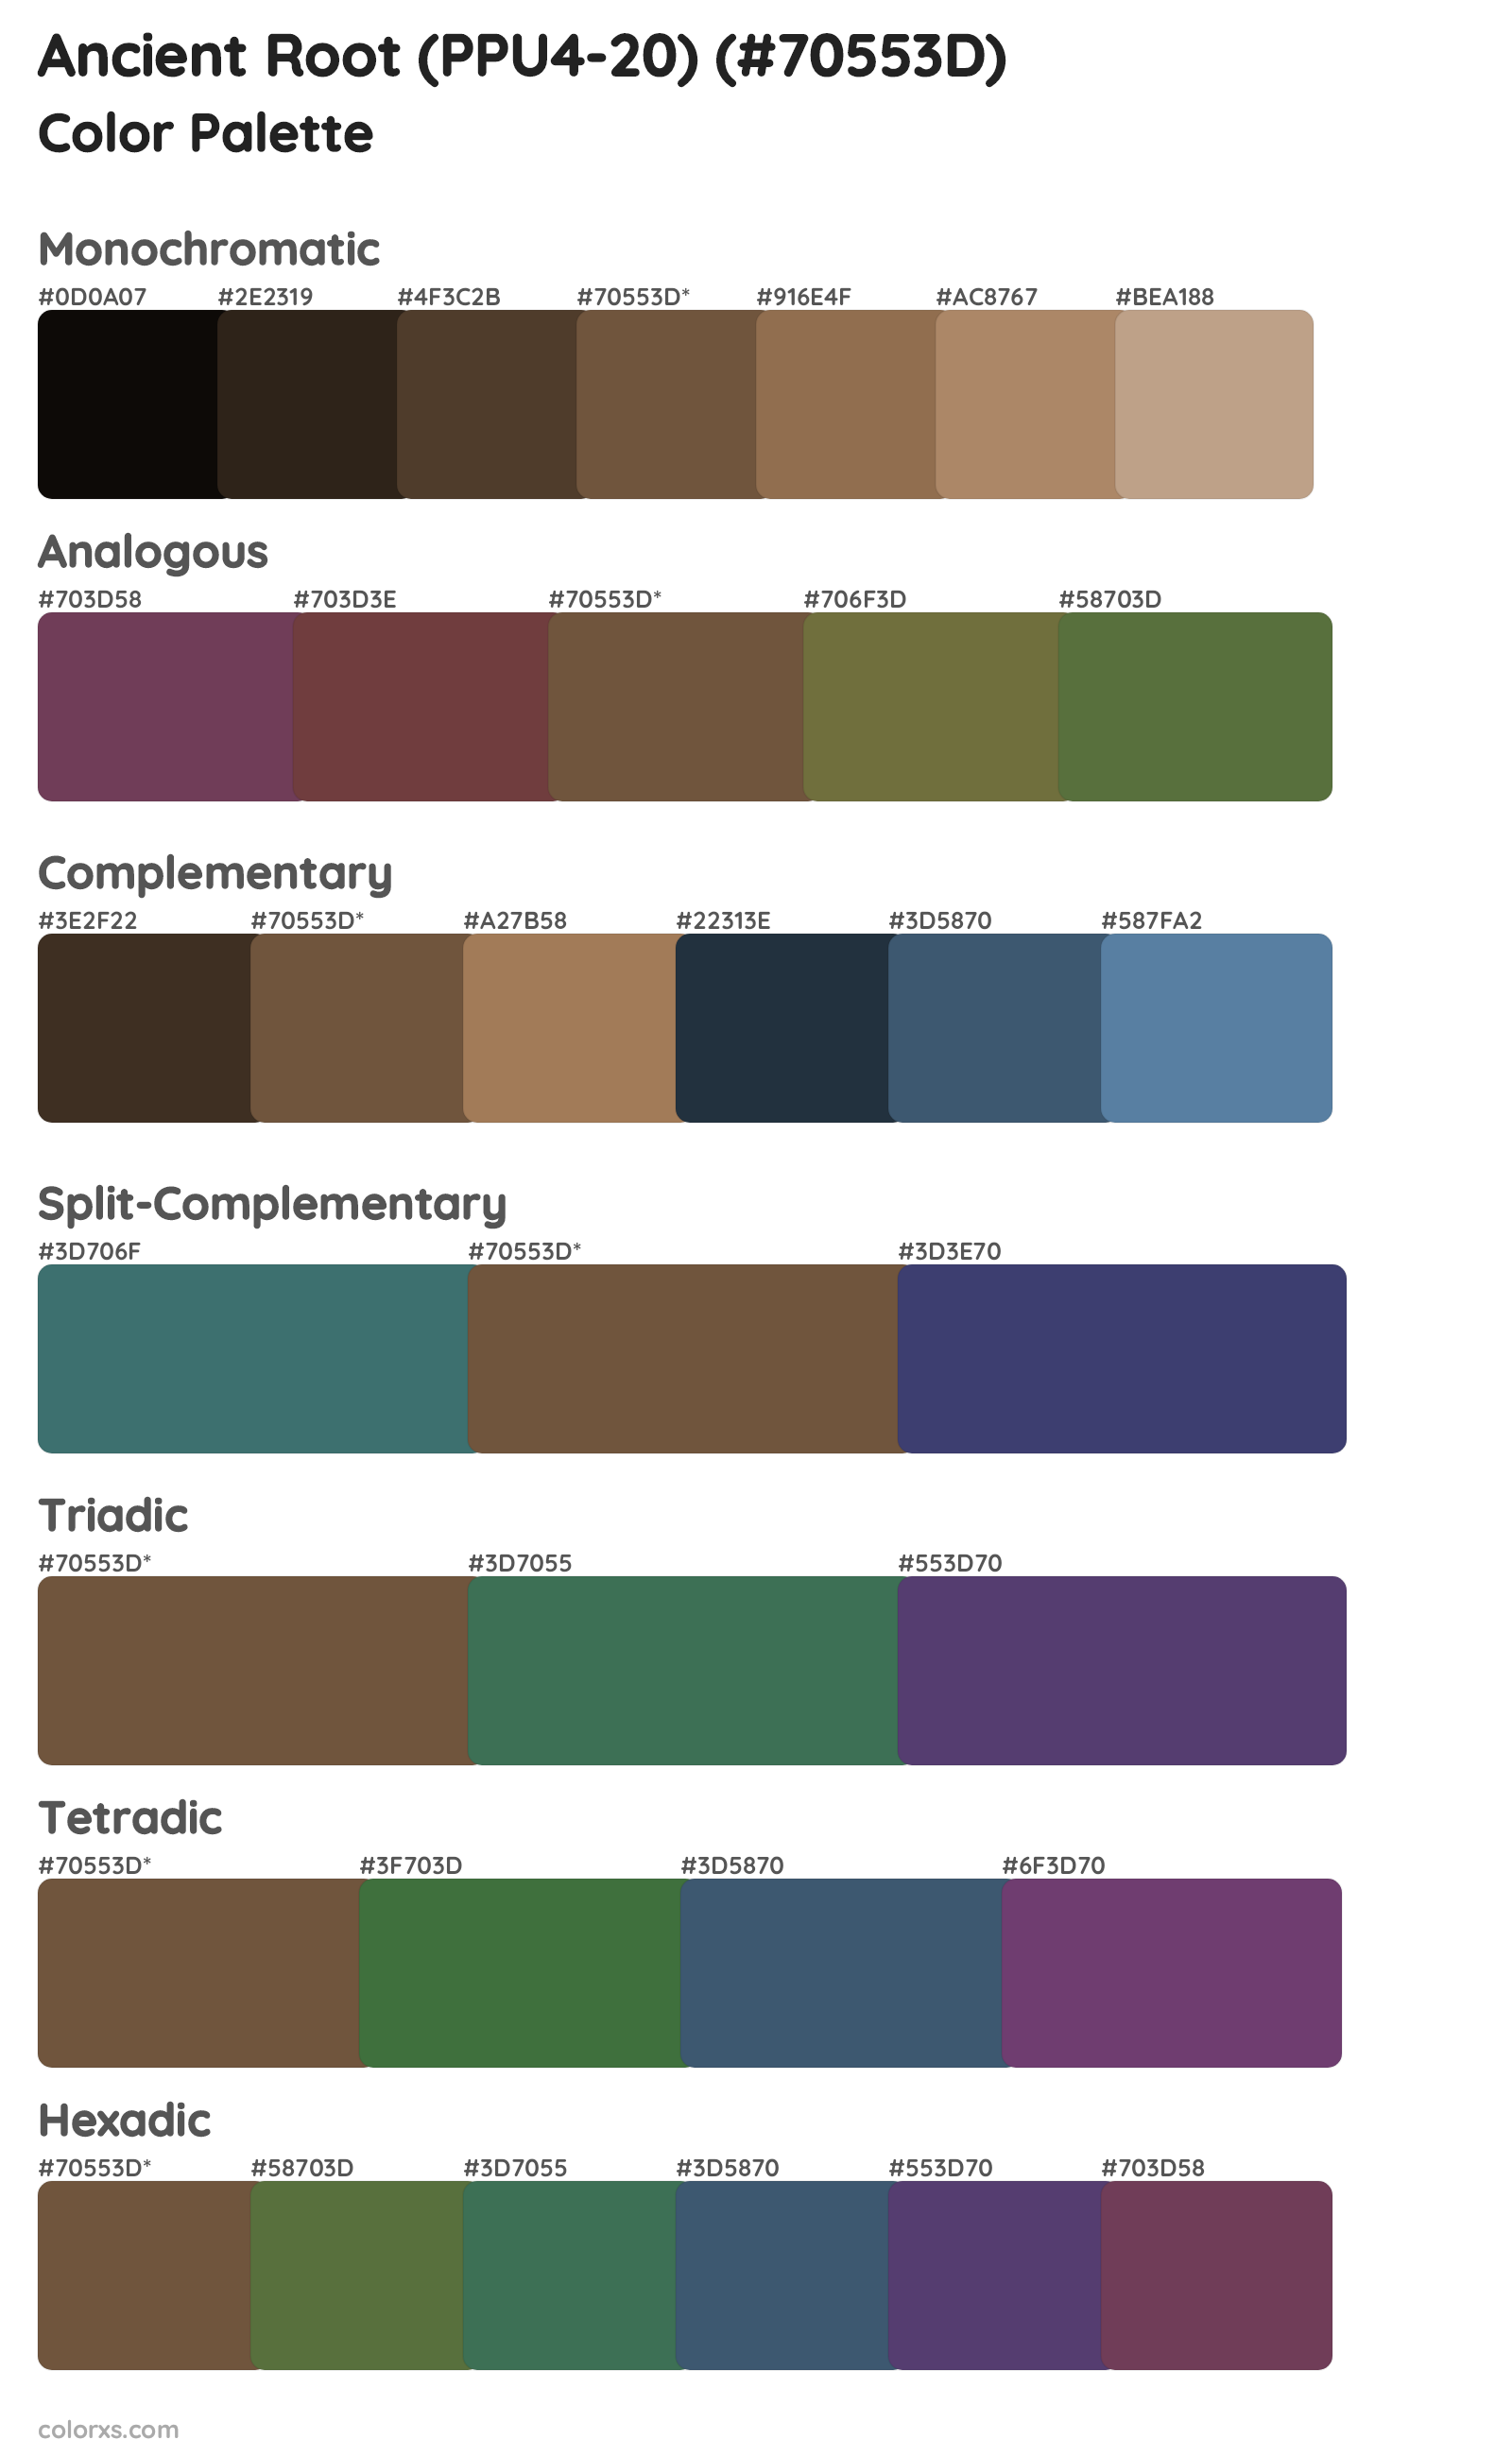 Ancient Root (PPU4-20) Color Scheme Palettes